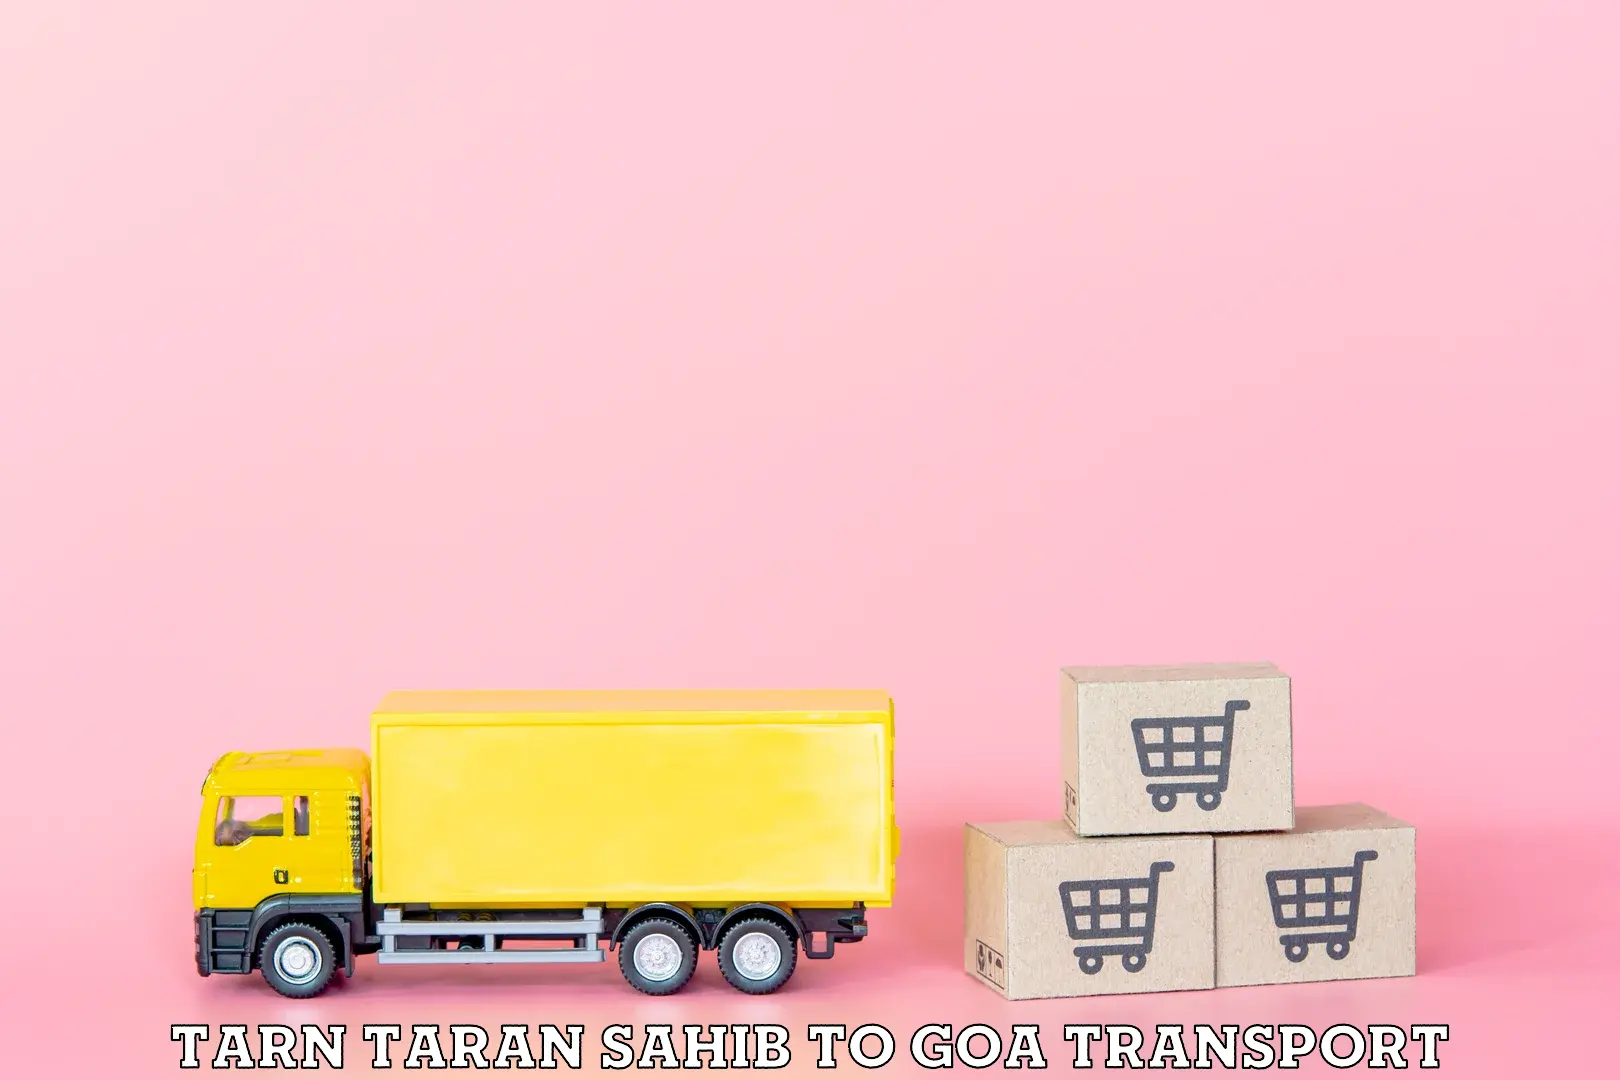 Daily parcel service transport Tarn Taran Sahib to Ponda